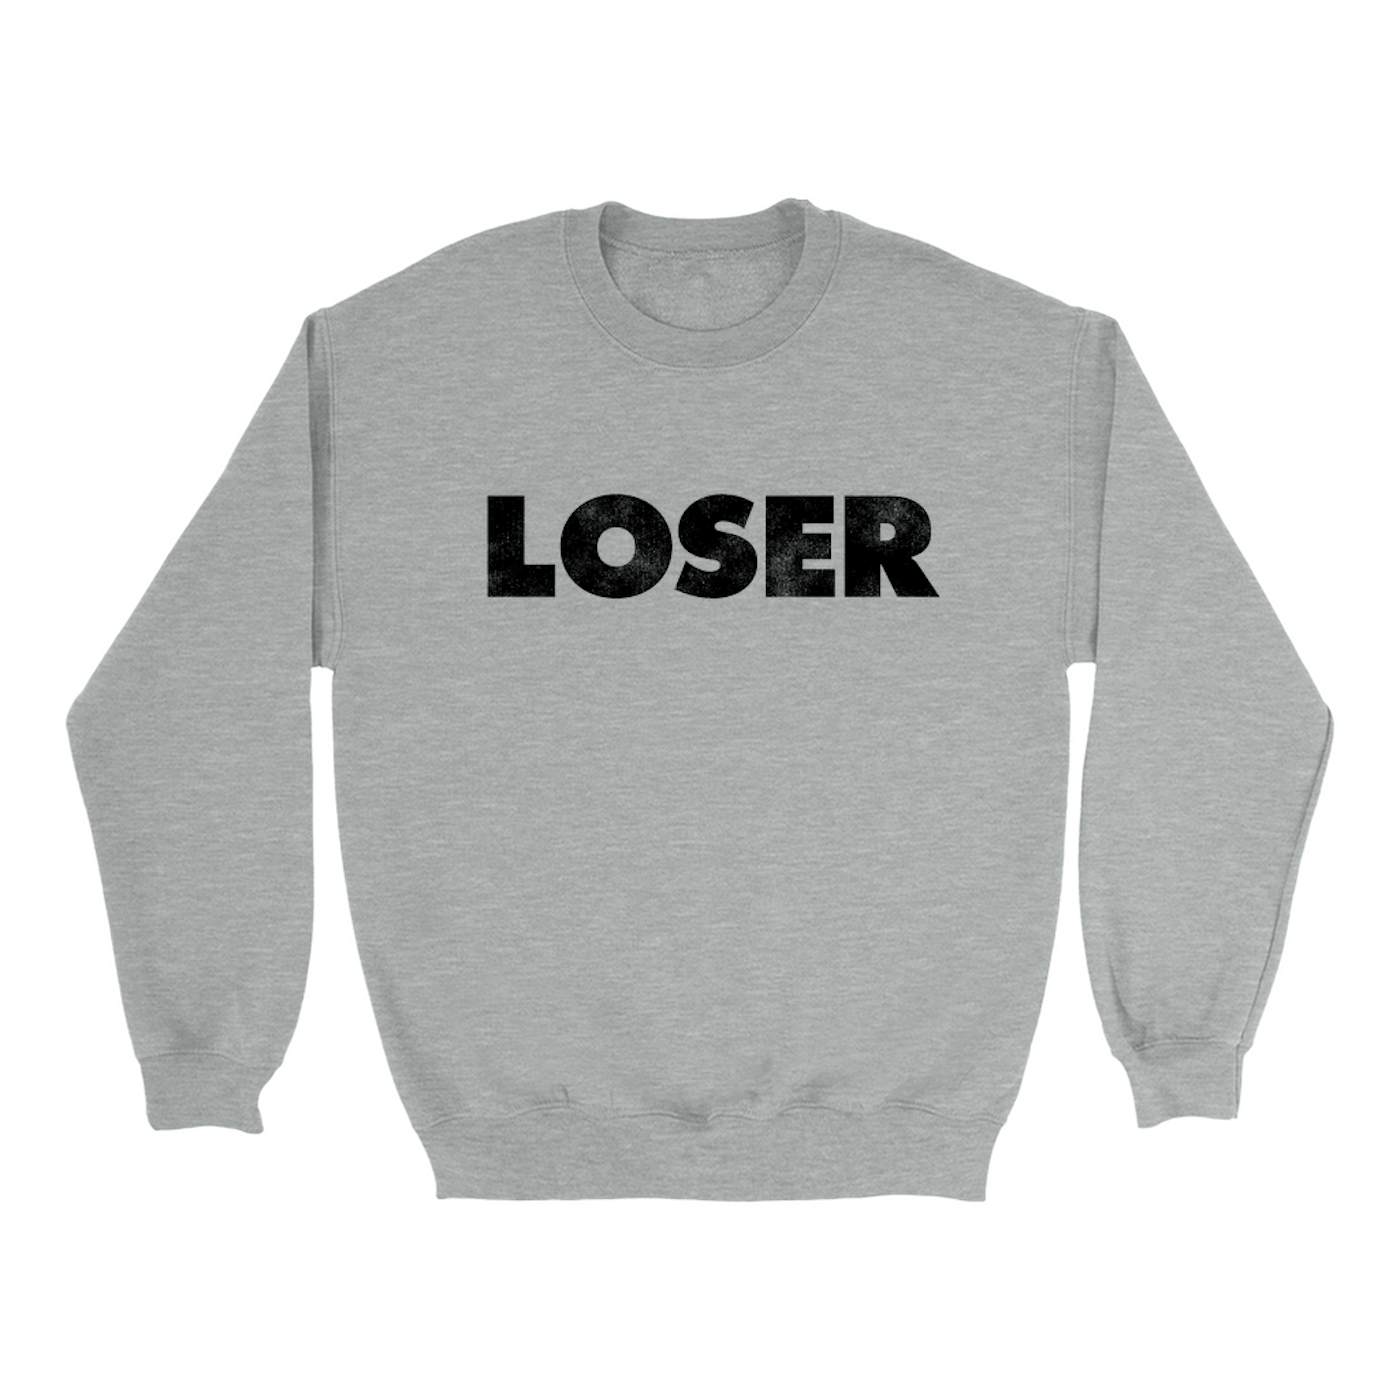 Pearl Jam Sweatshirt | Loser Worn By Eddie Vedder Pearl Jam Sweatshirt